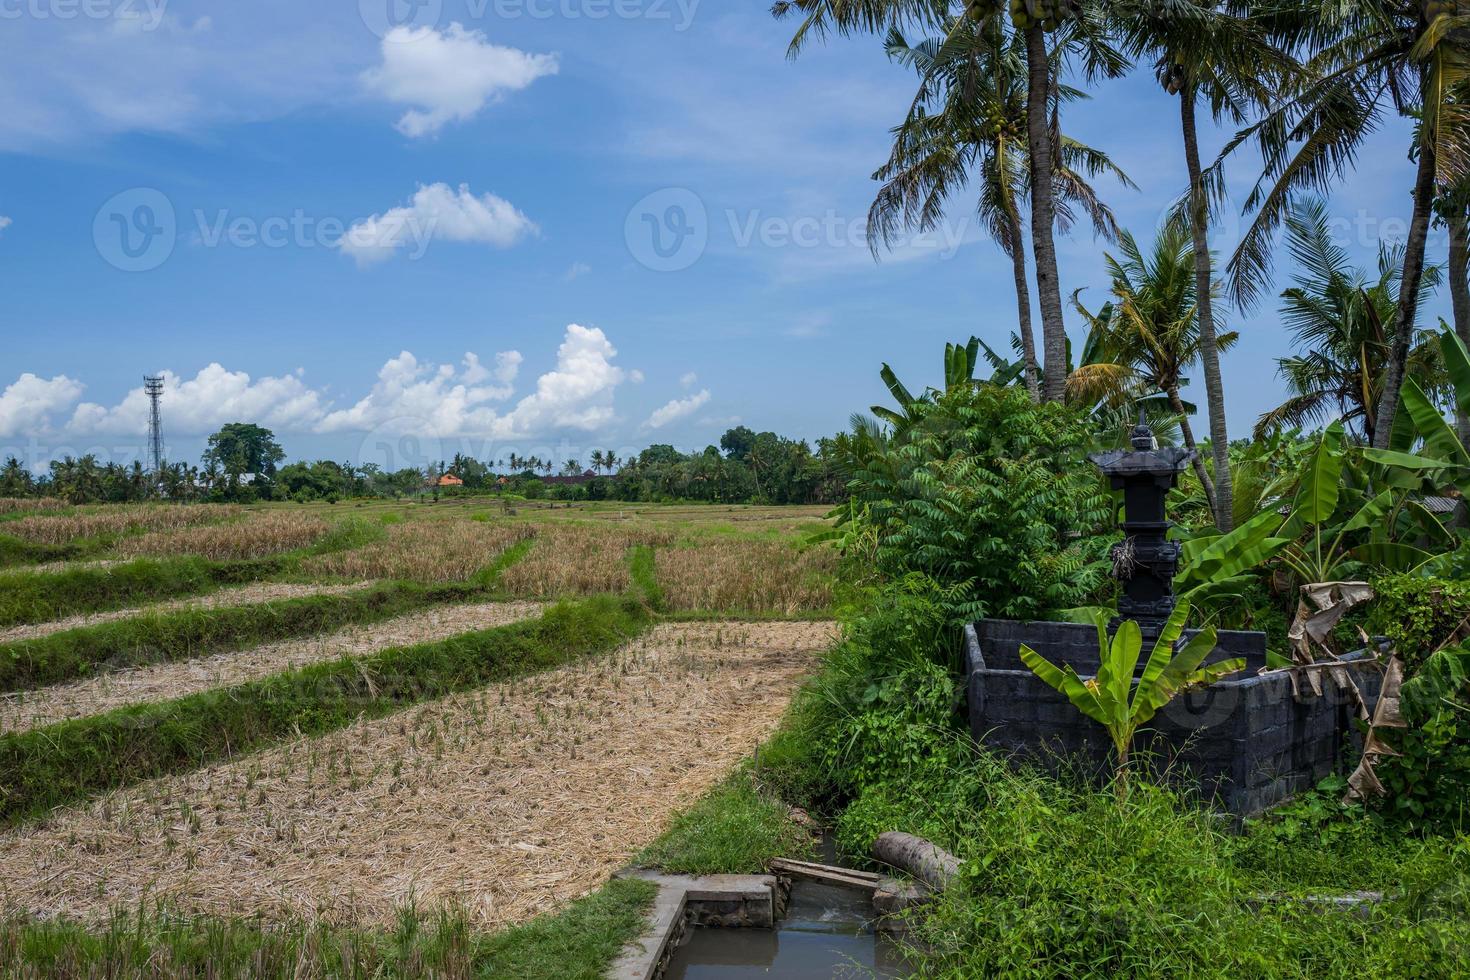 Ver en los campos de arroz en canggu inbali foto